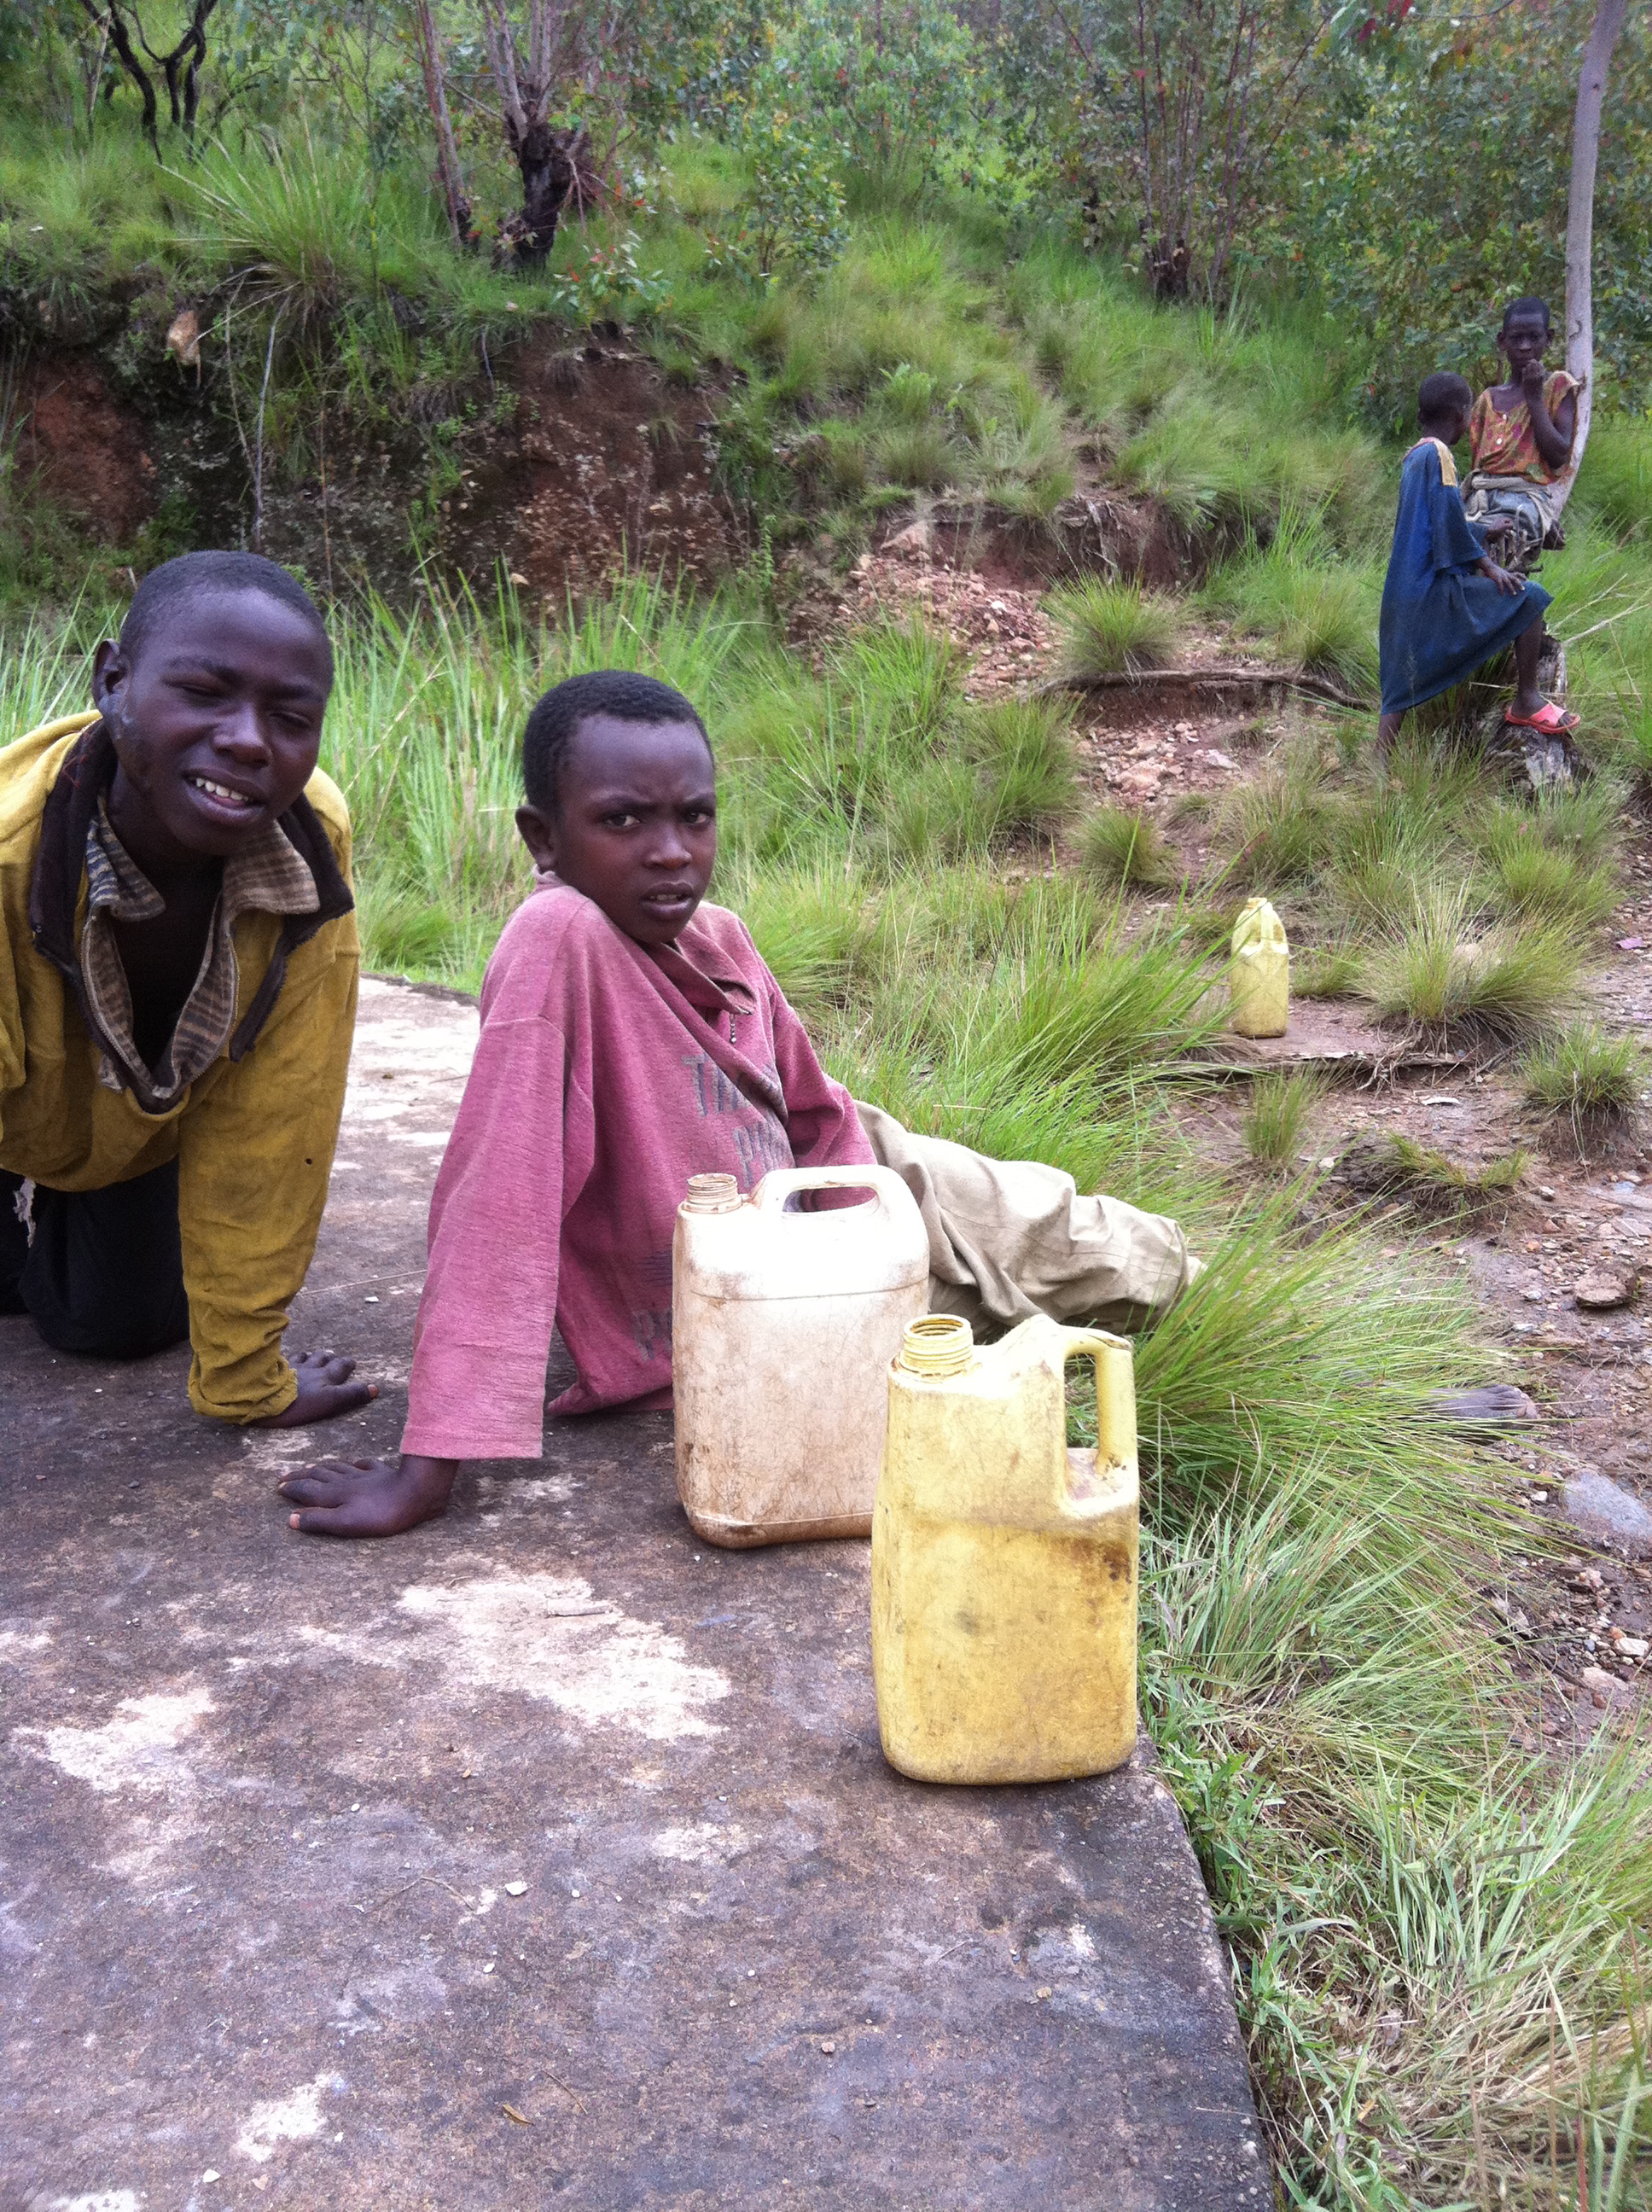  The "Water Carriers" Mugonero, Rwanda 